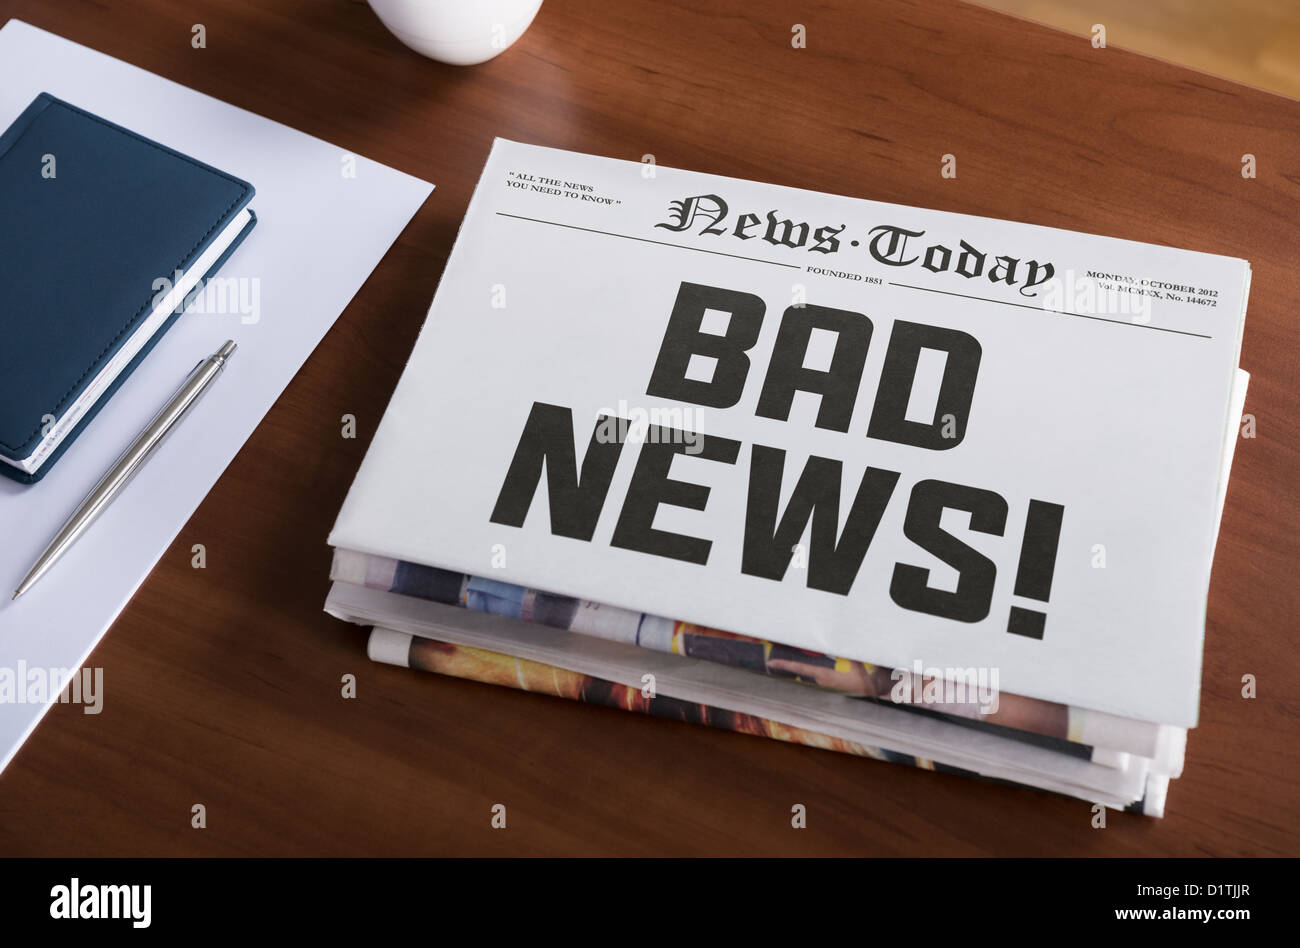 Zeitung-Konzept mit heißes Thema "Bad News" am Schreibtisch liegen. Stockfoto